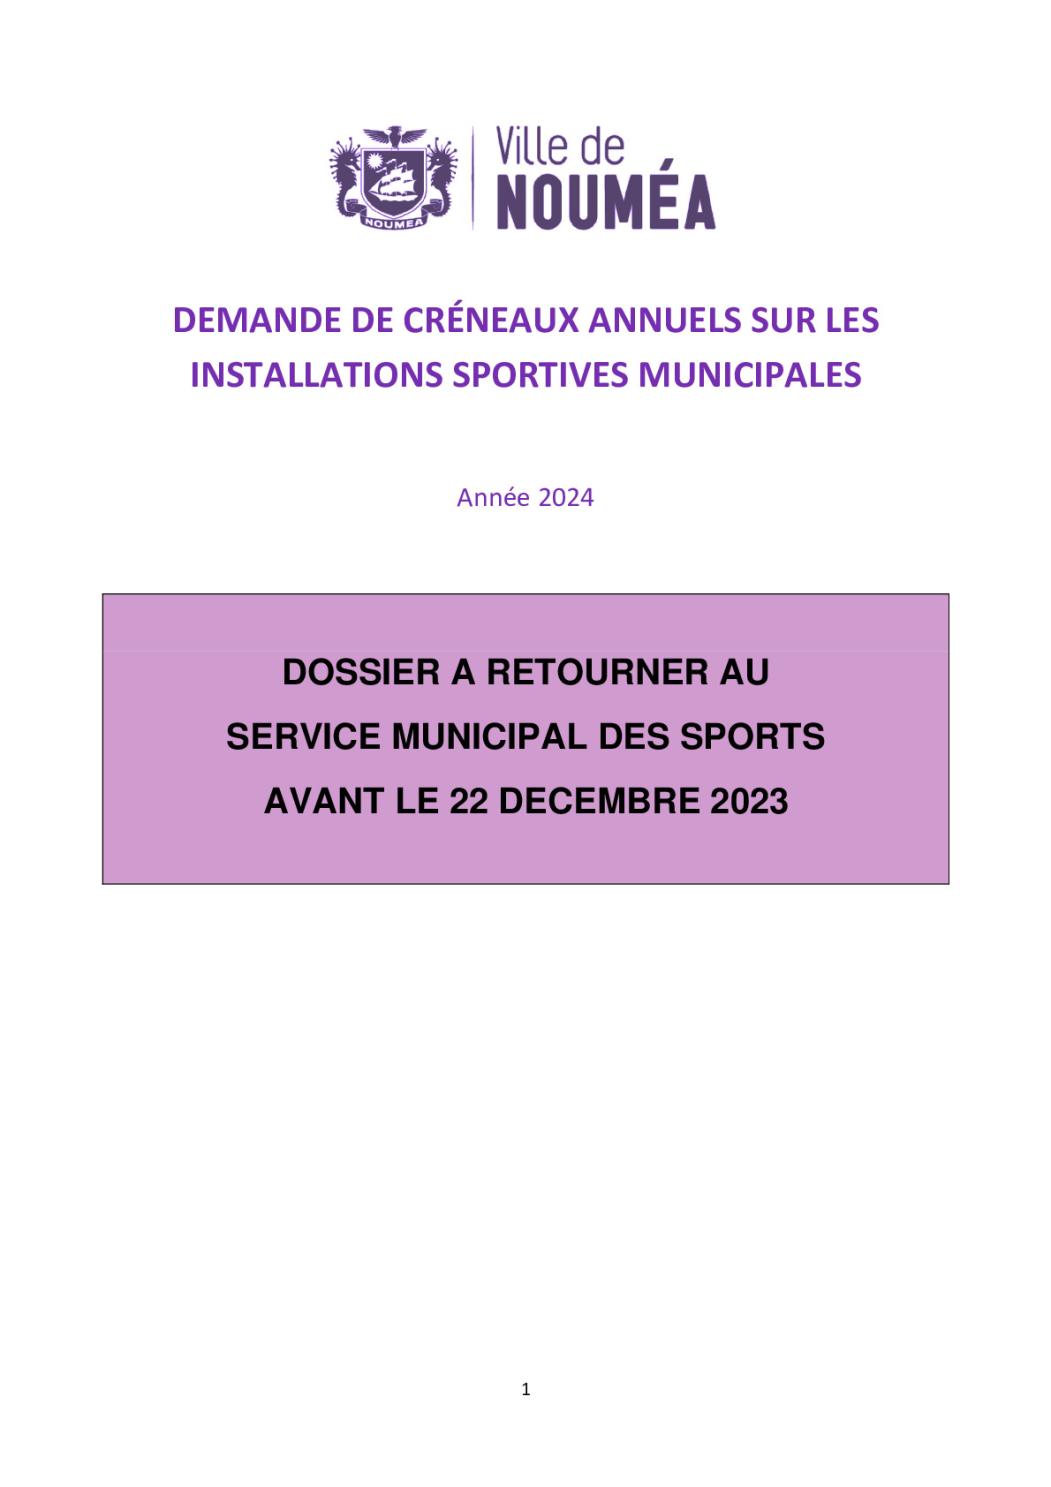 Le service municipal des sports